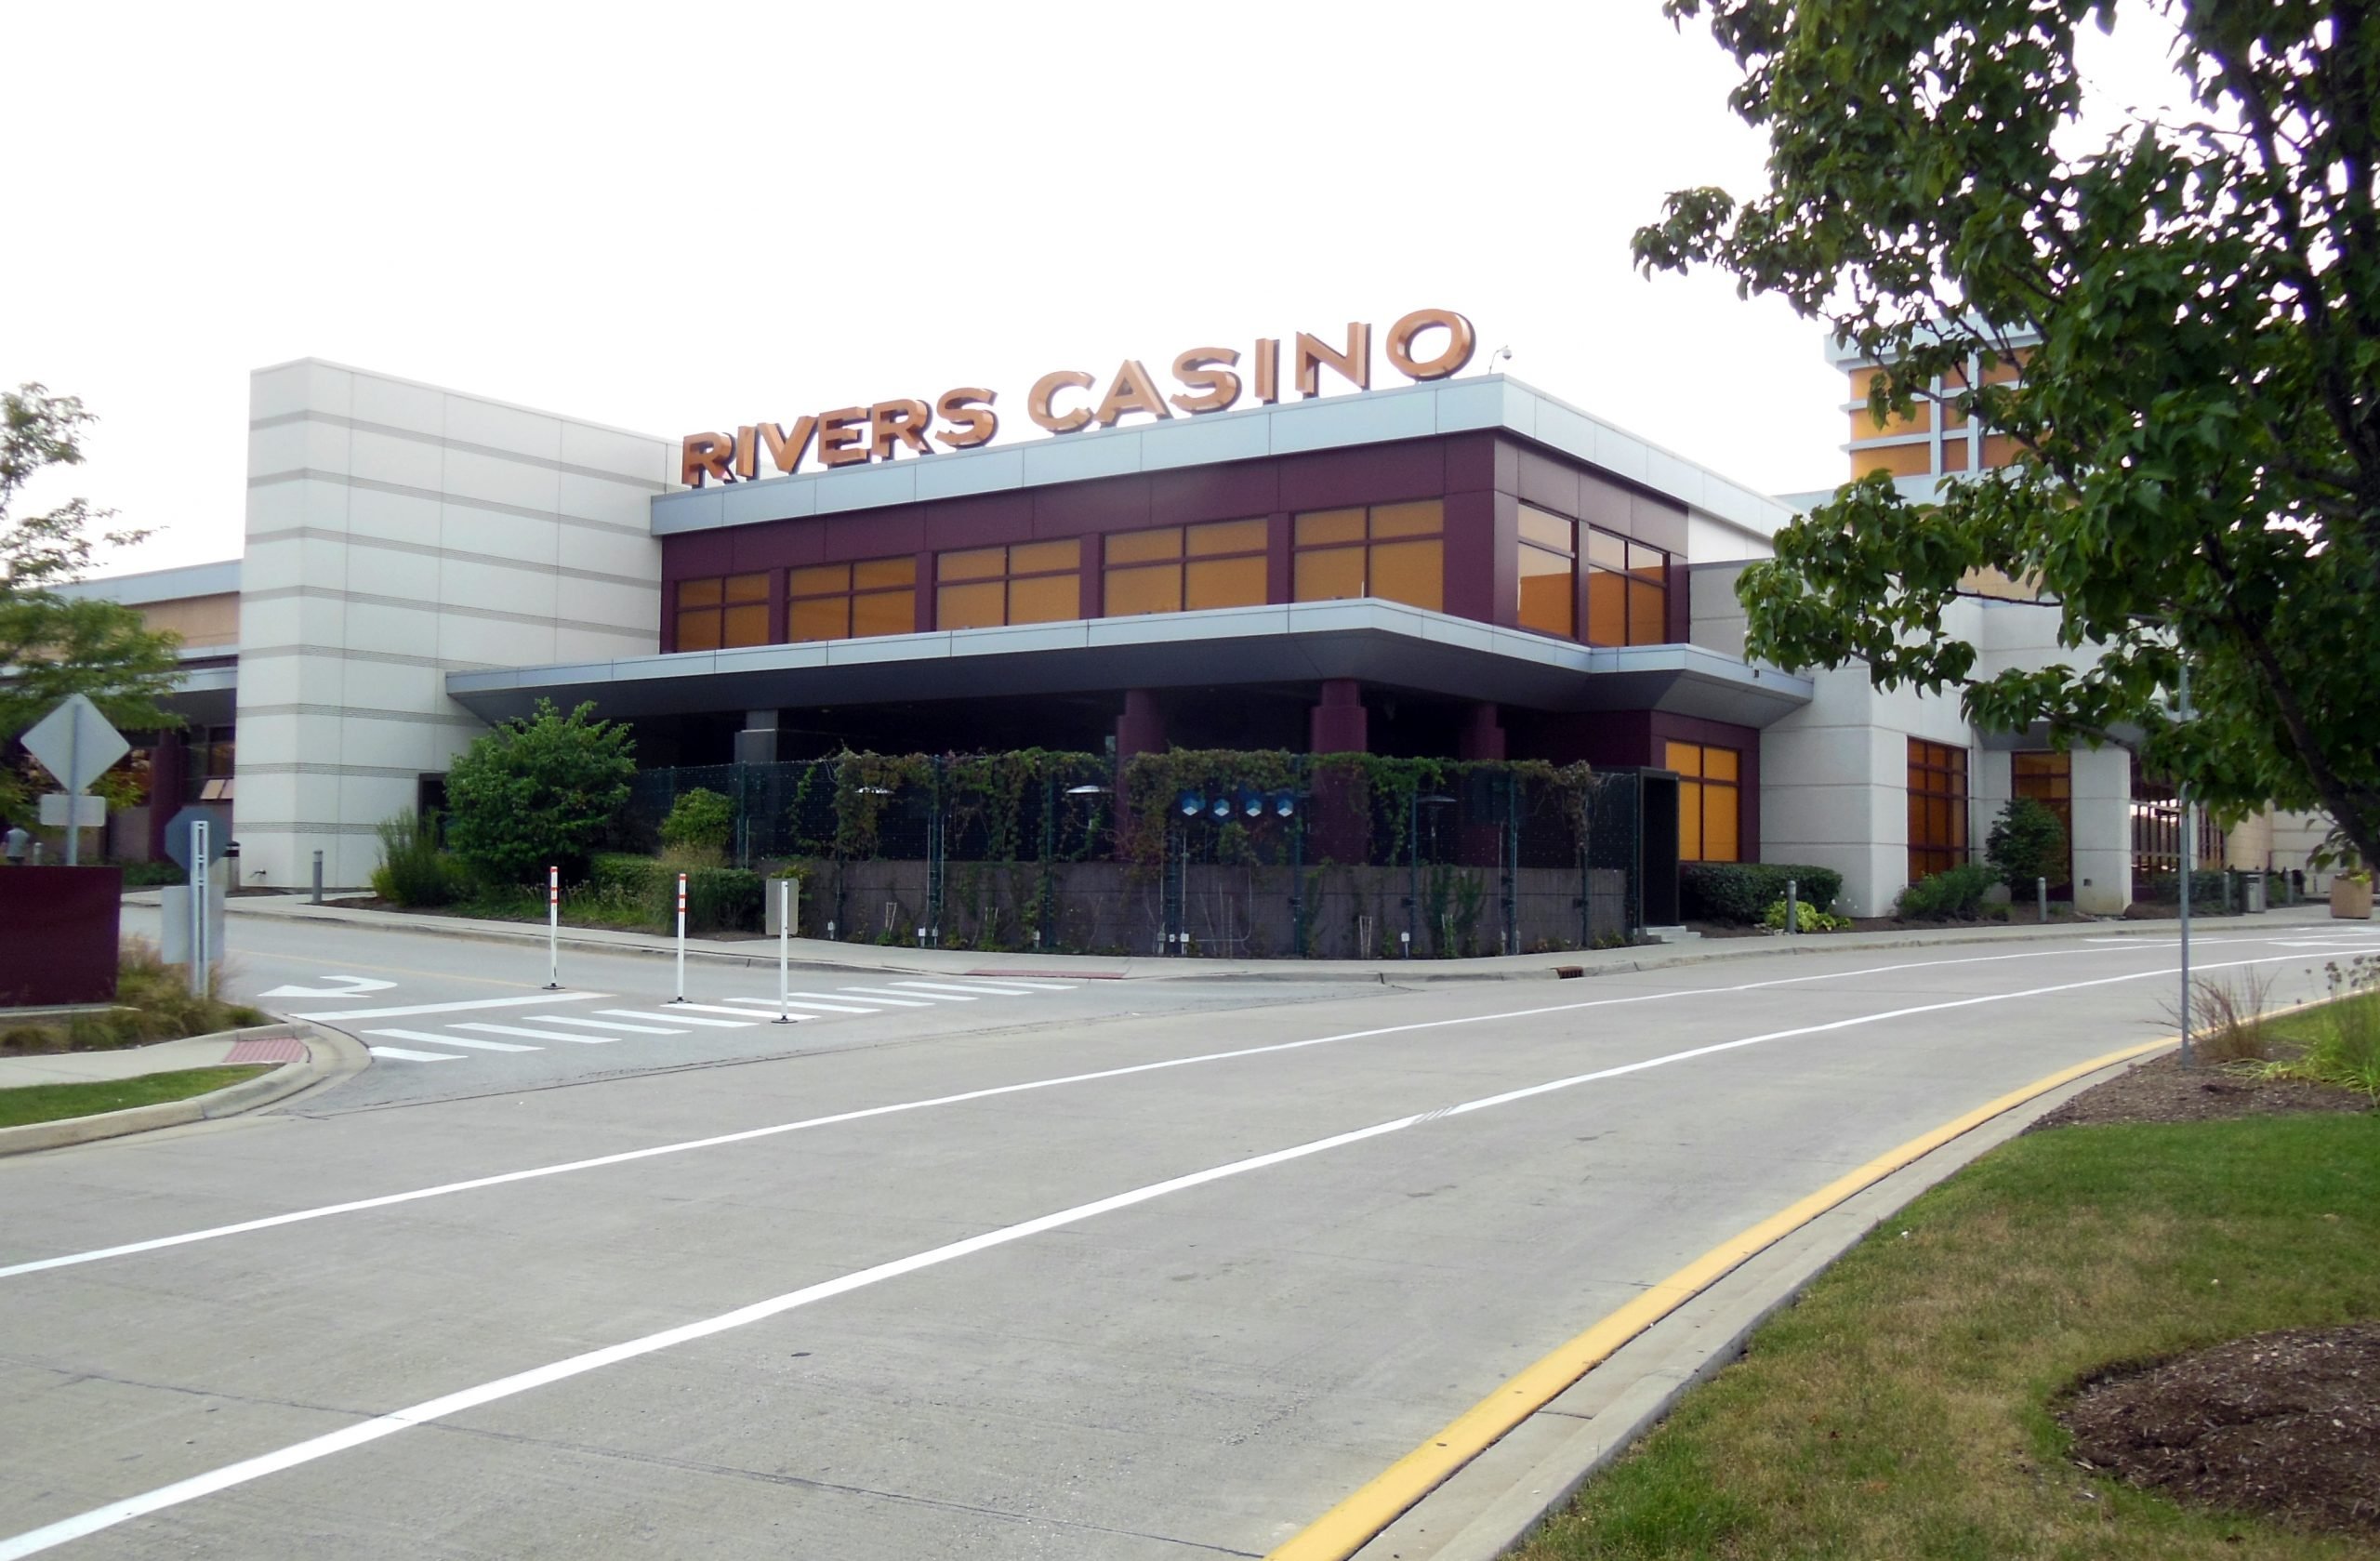 rivers casino investigation chicago illinois